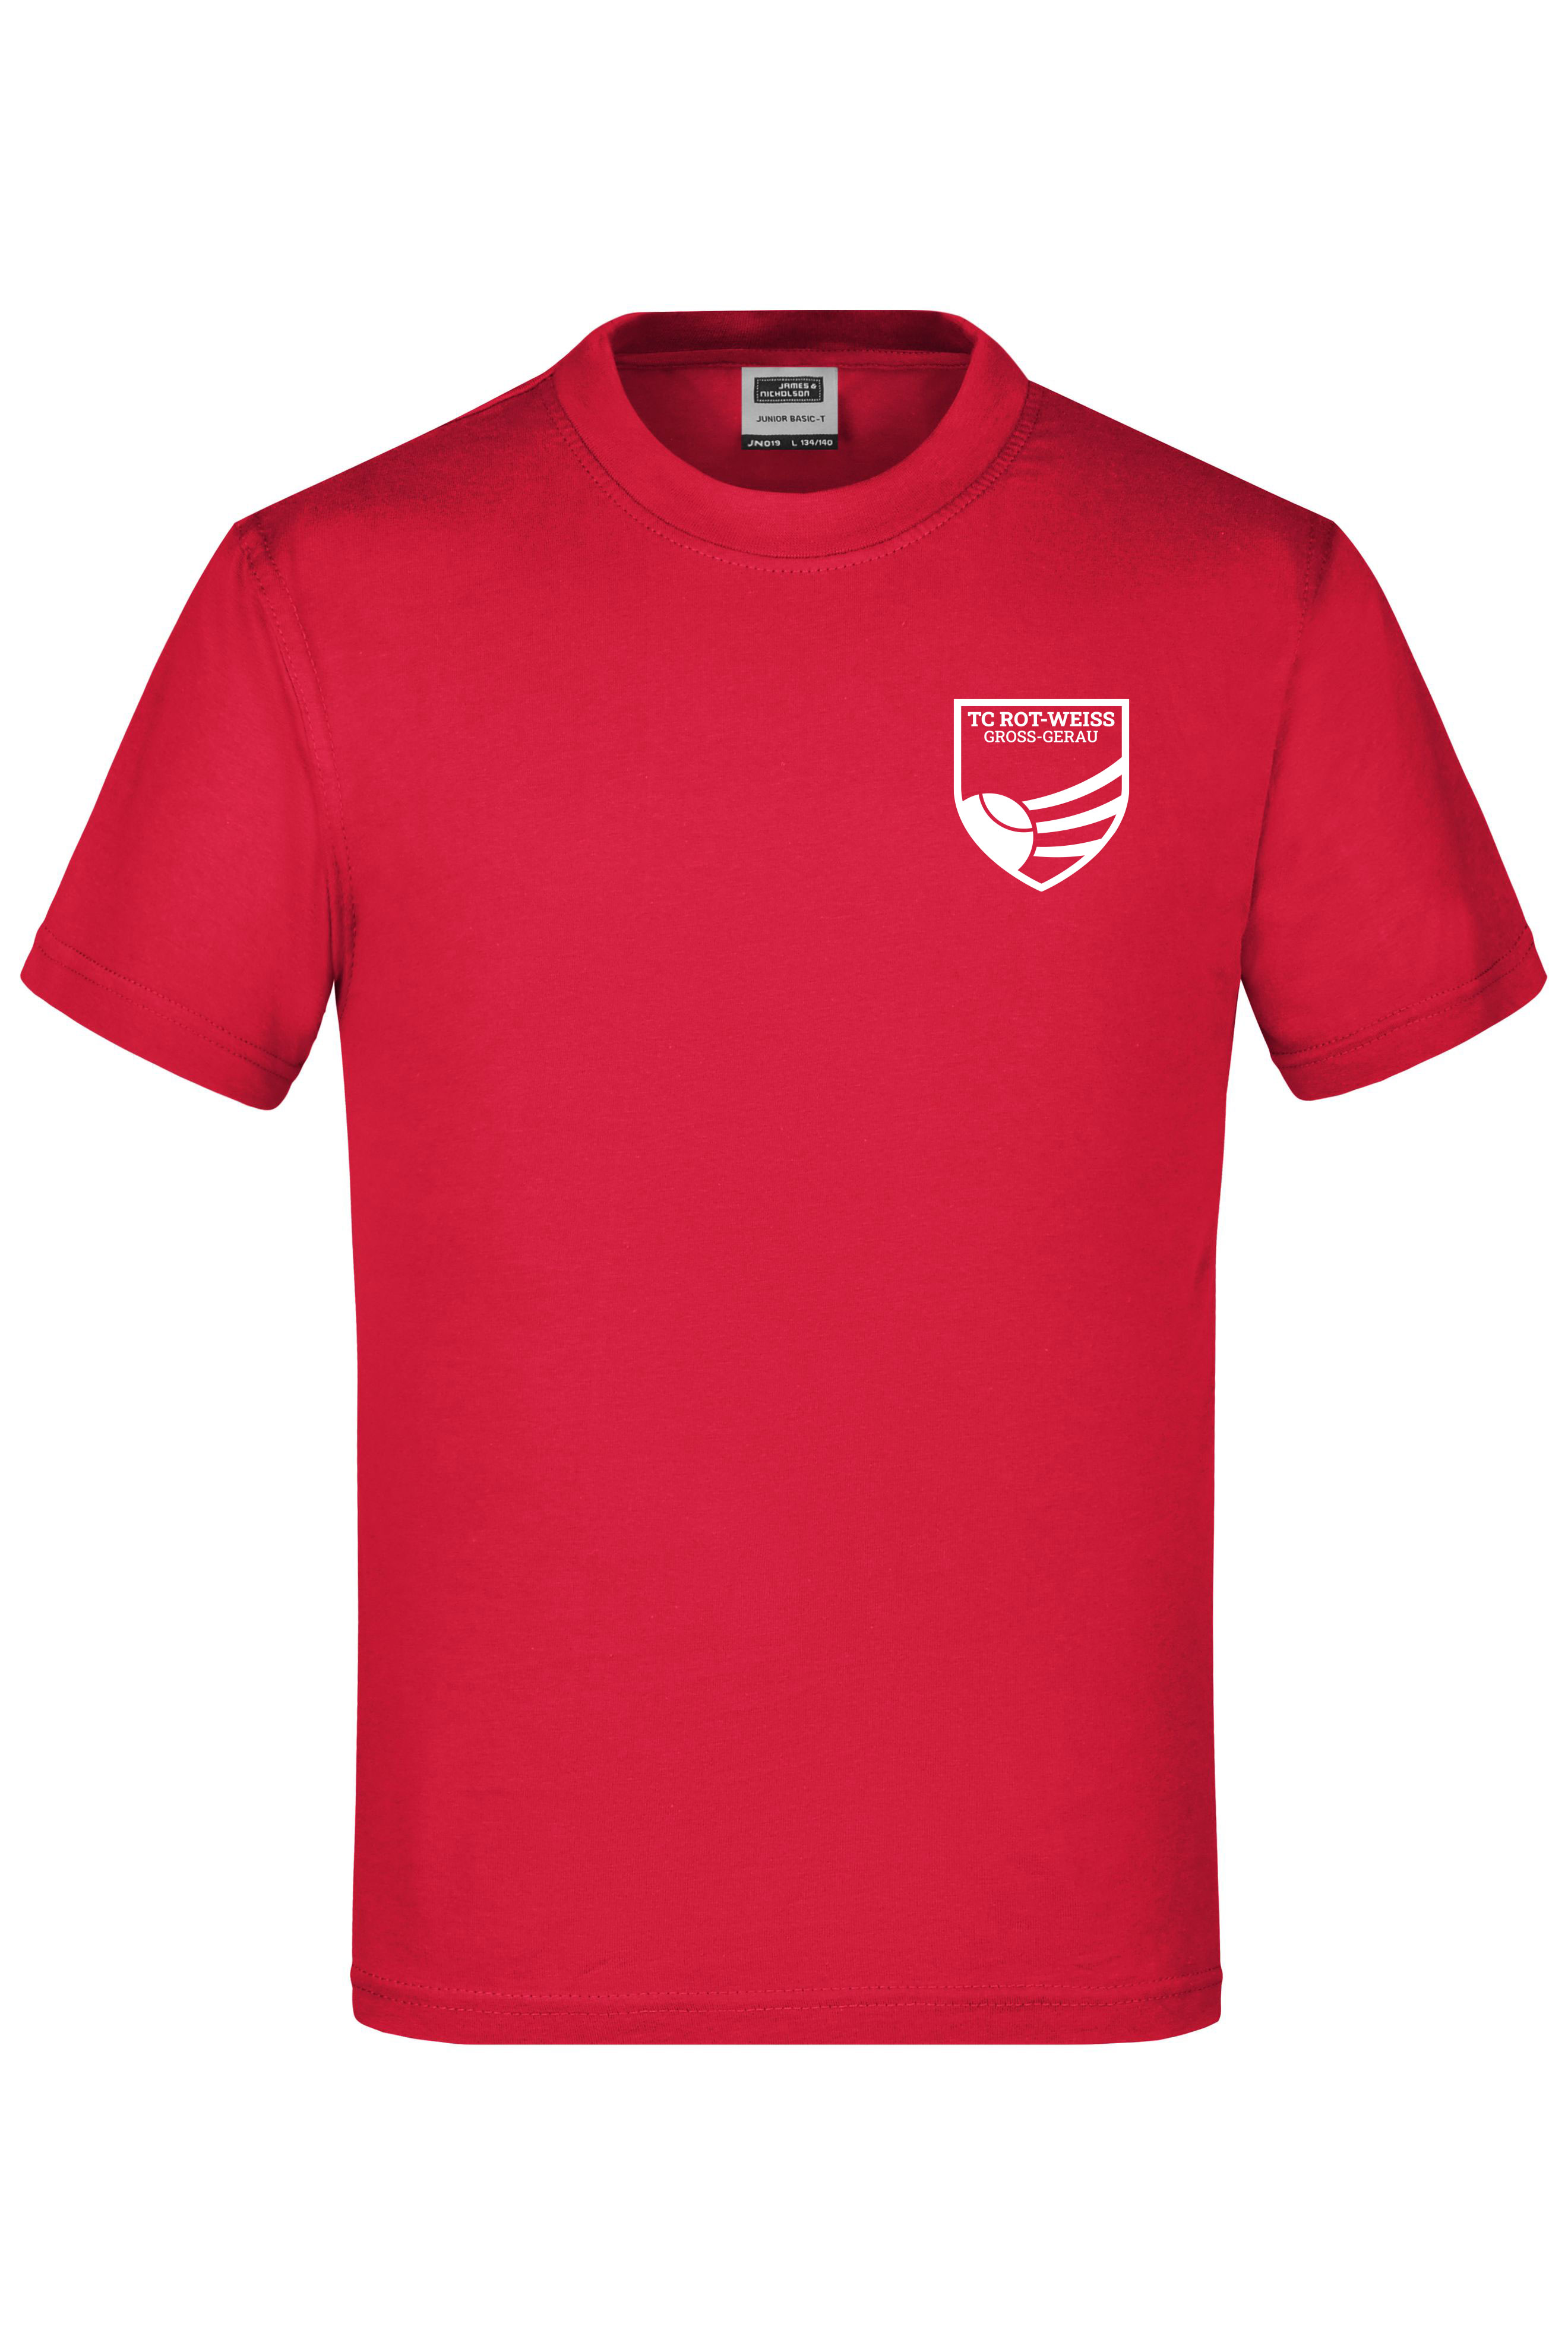 TC Rot-Weiss - Vorteil Dein Name - Kinder T-Shirt weiss auf rot